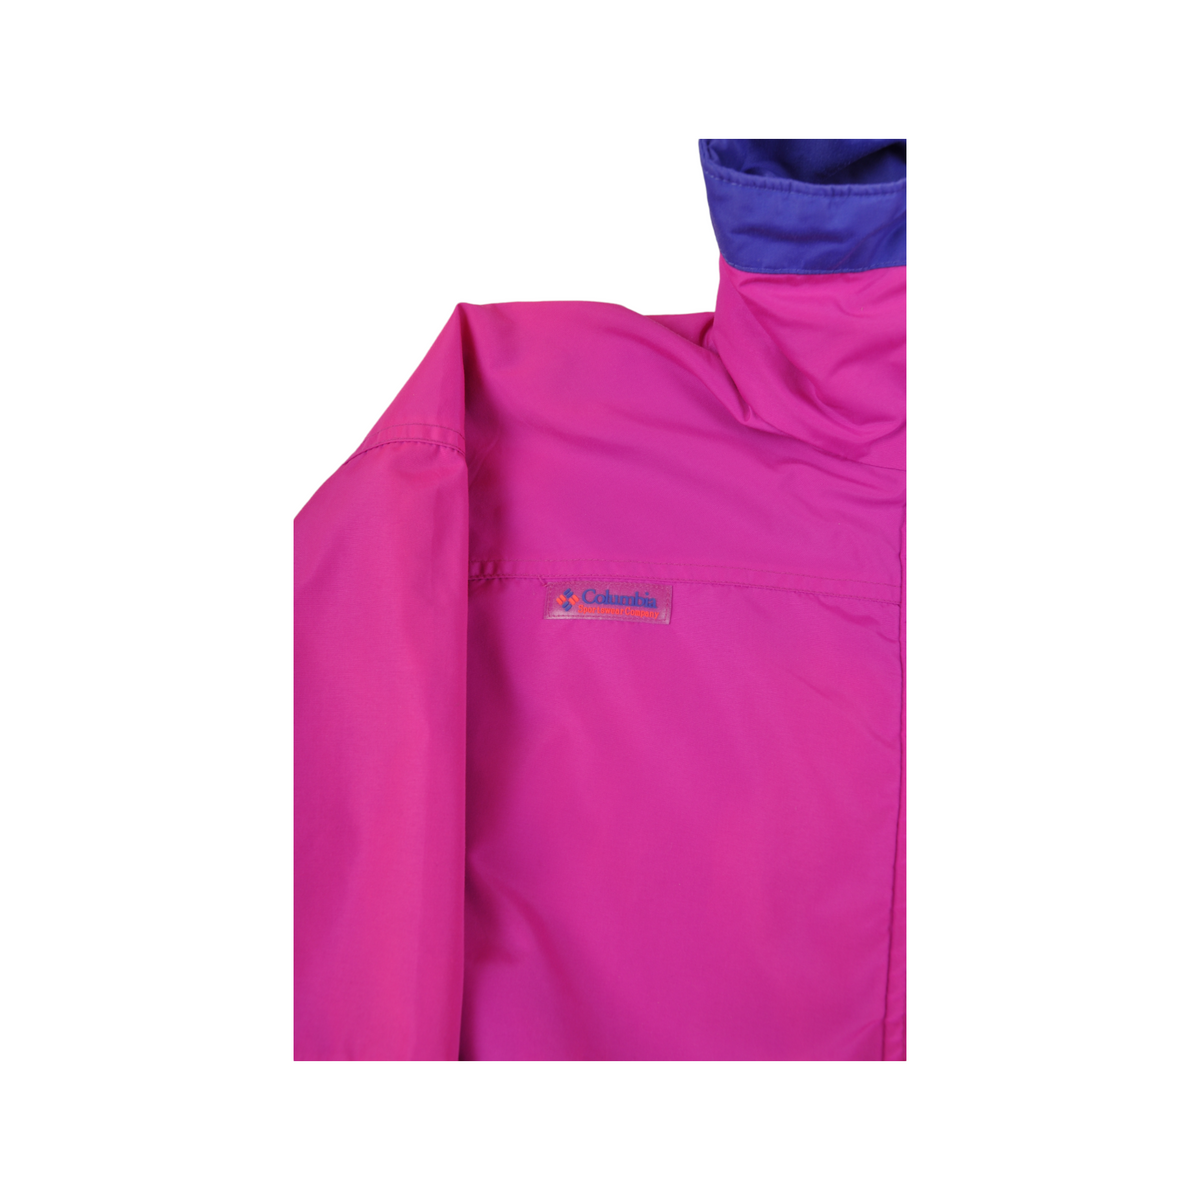 Vintage Columbia Ski Jacket Waterproof Pink Ladies Small - Cloak Vintage